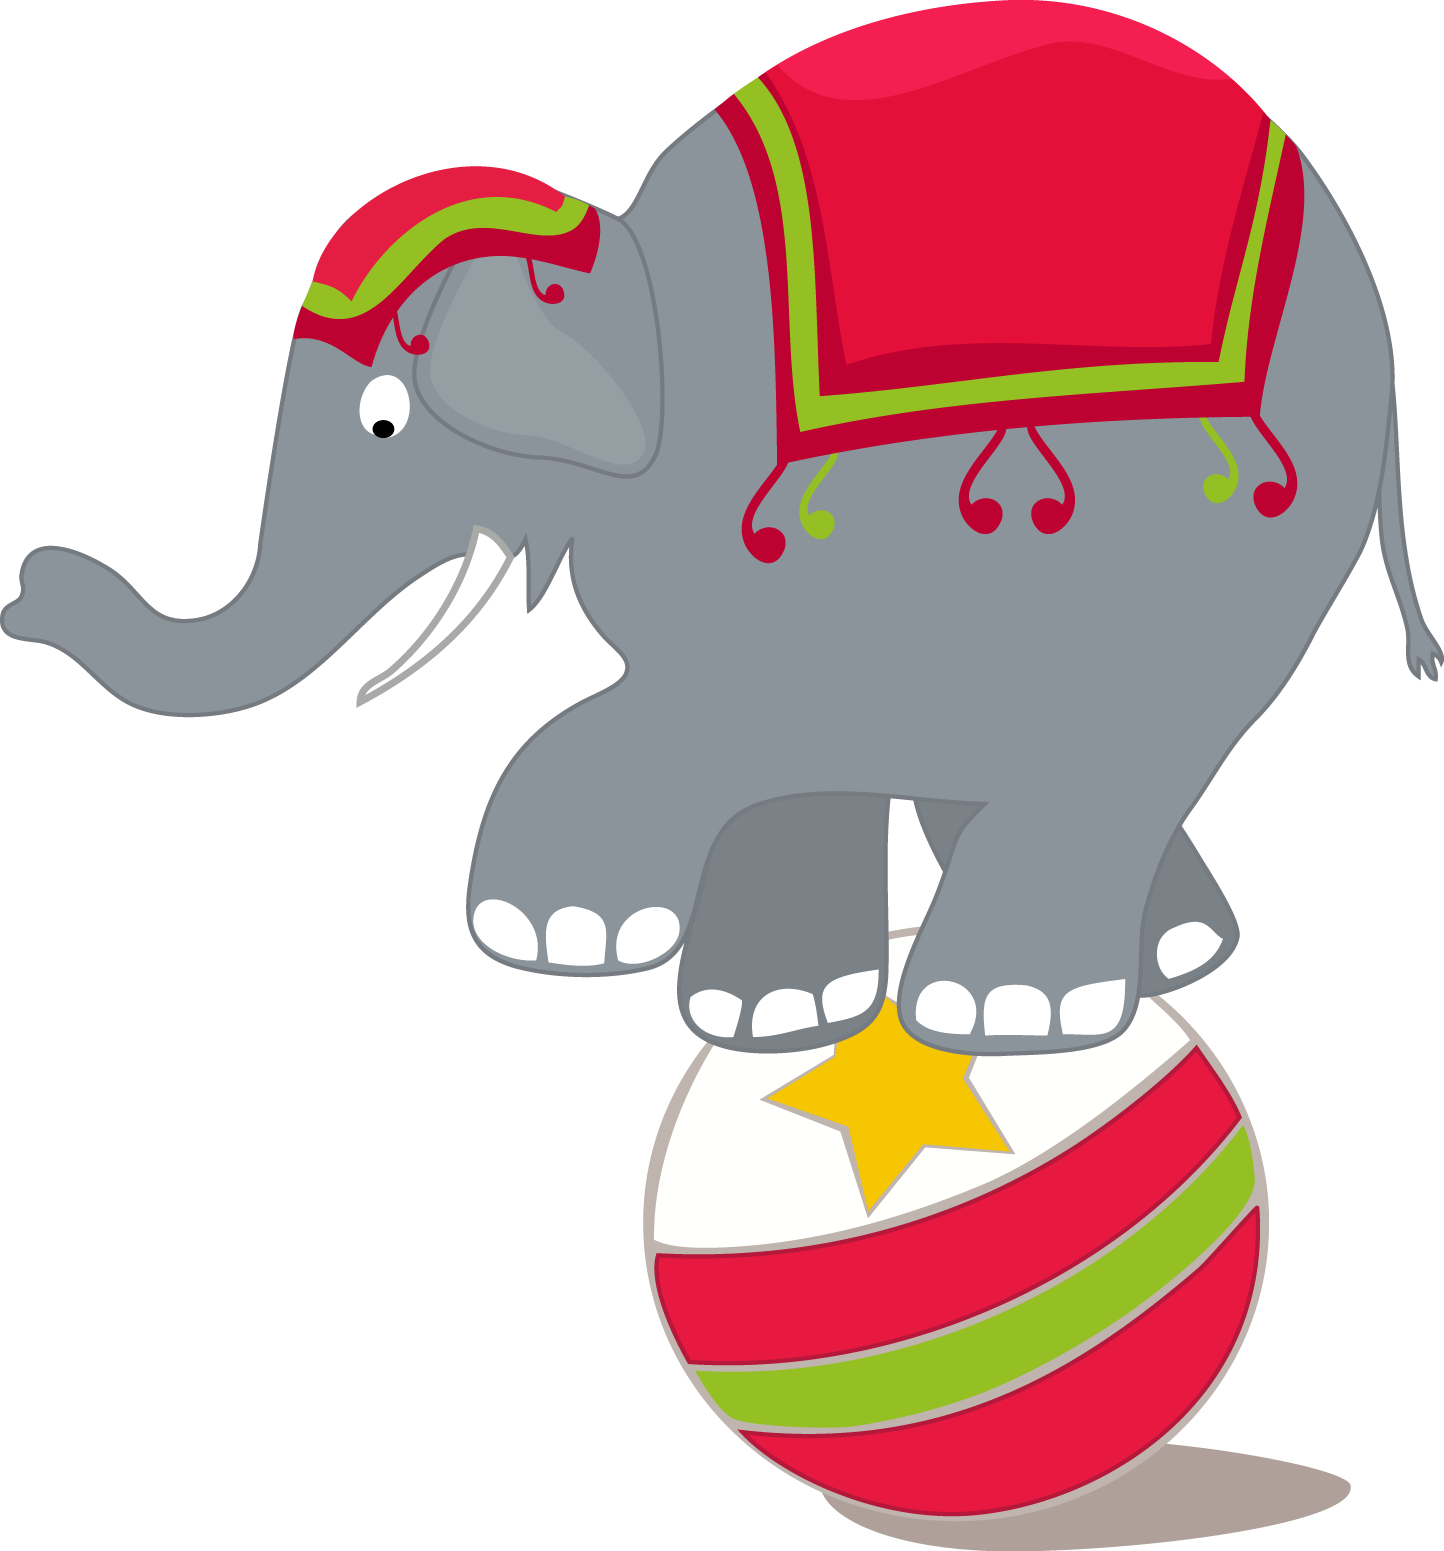 Circus Elephant Balancingon Ball PNG